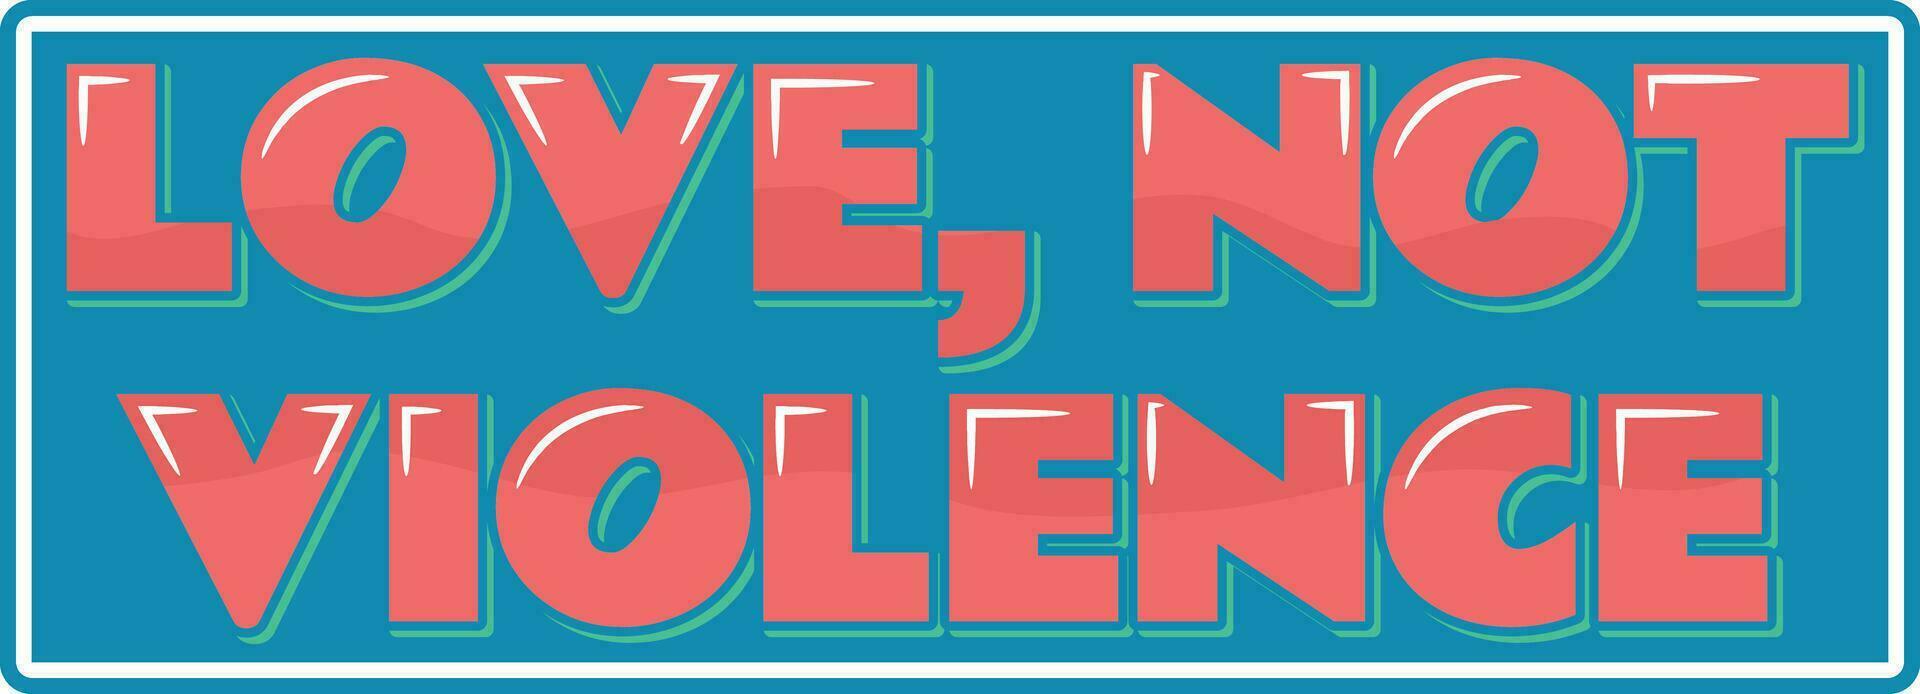 amor não violência vetor letras